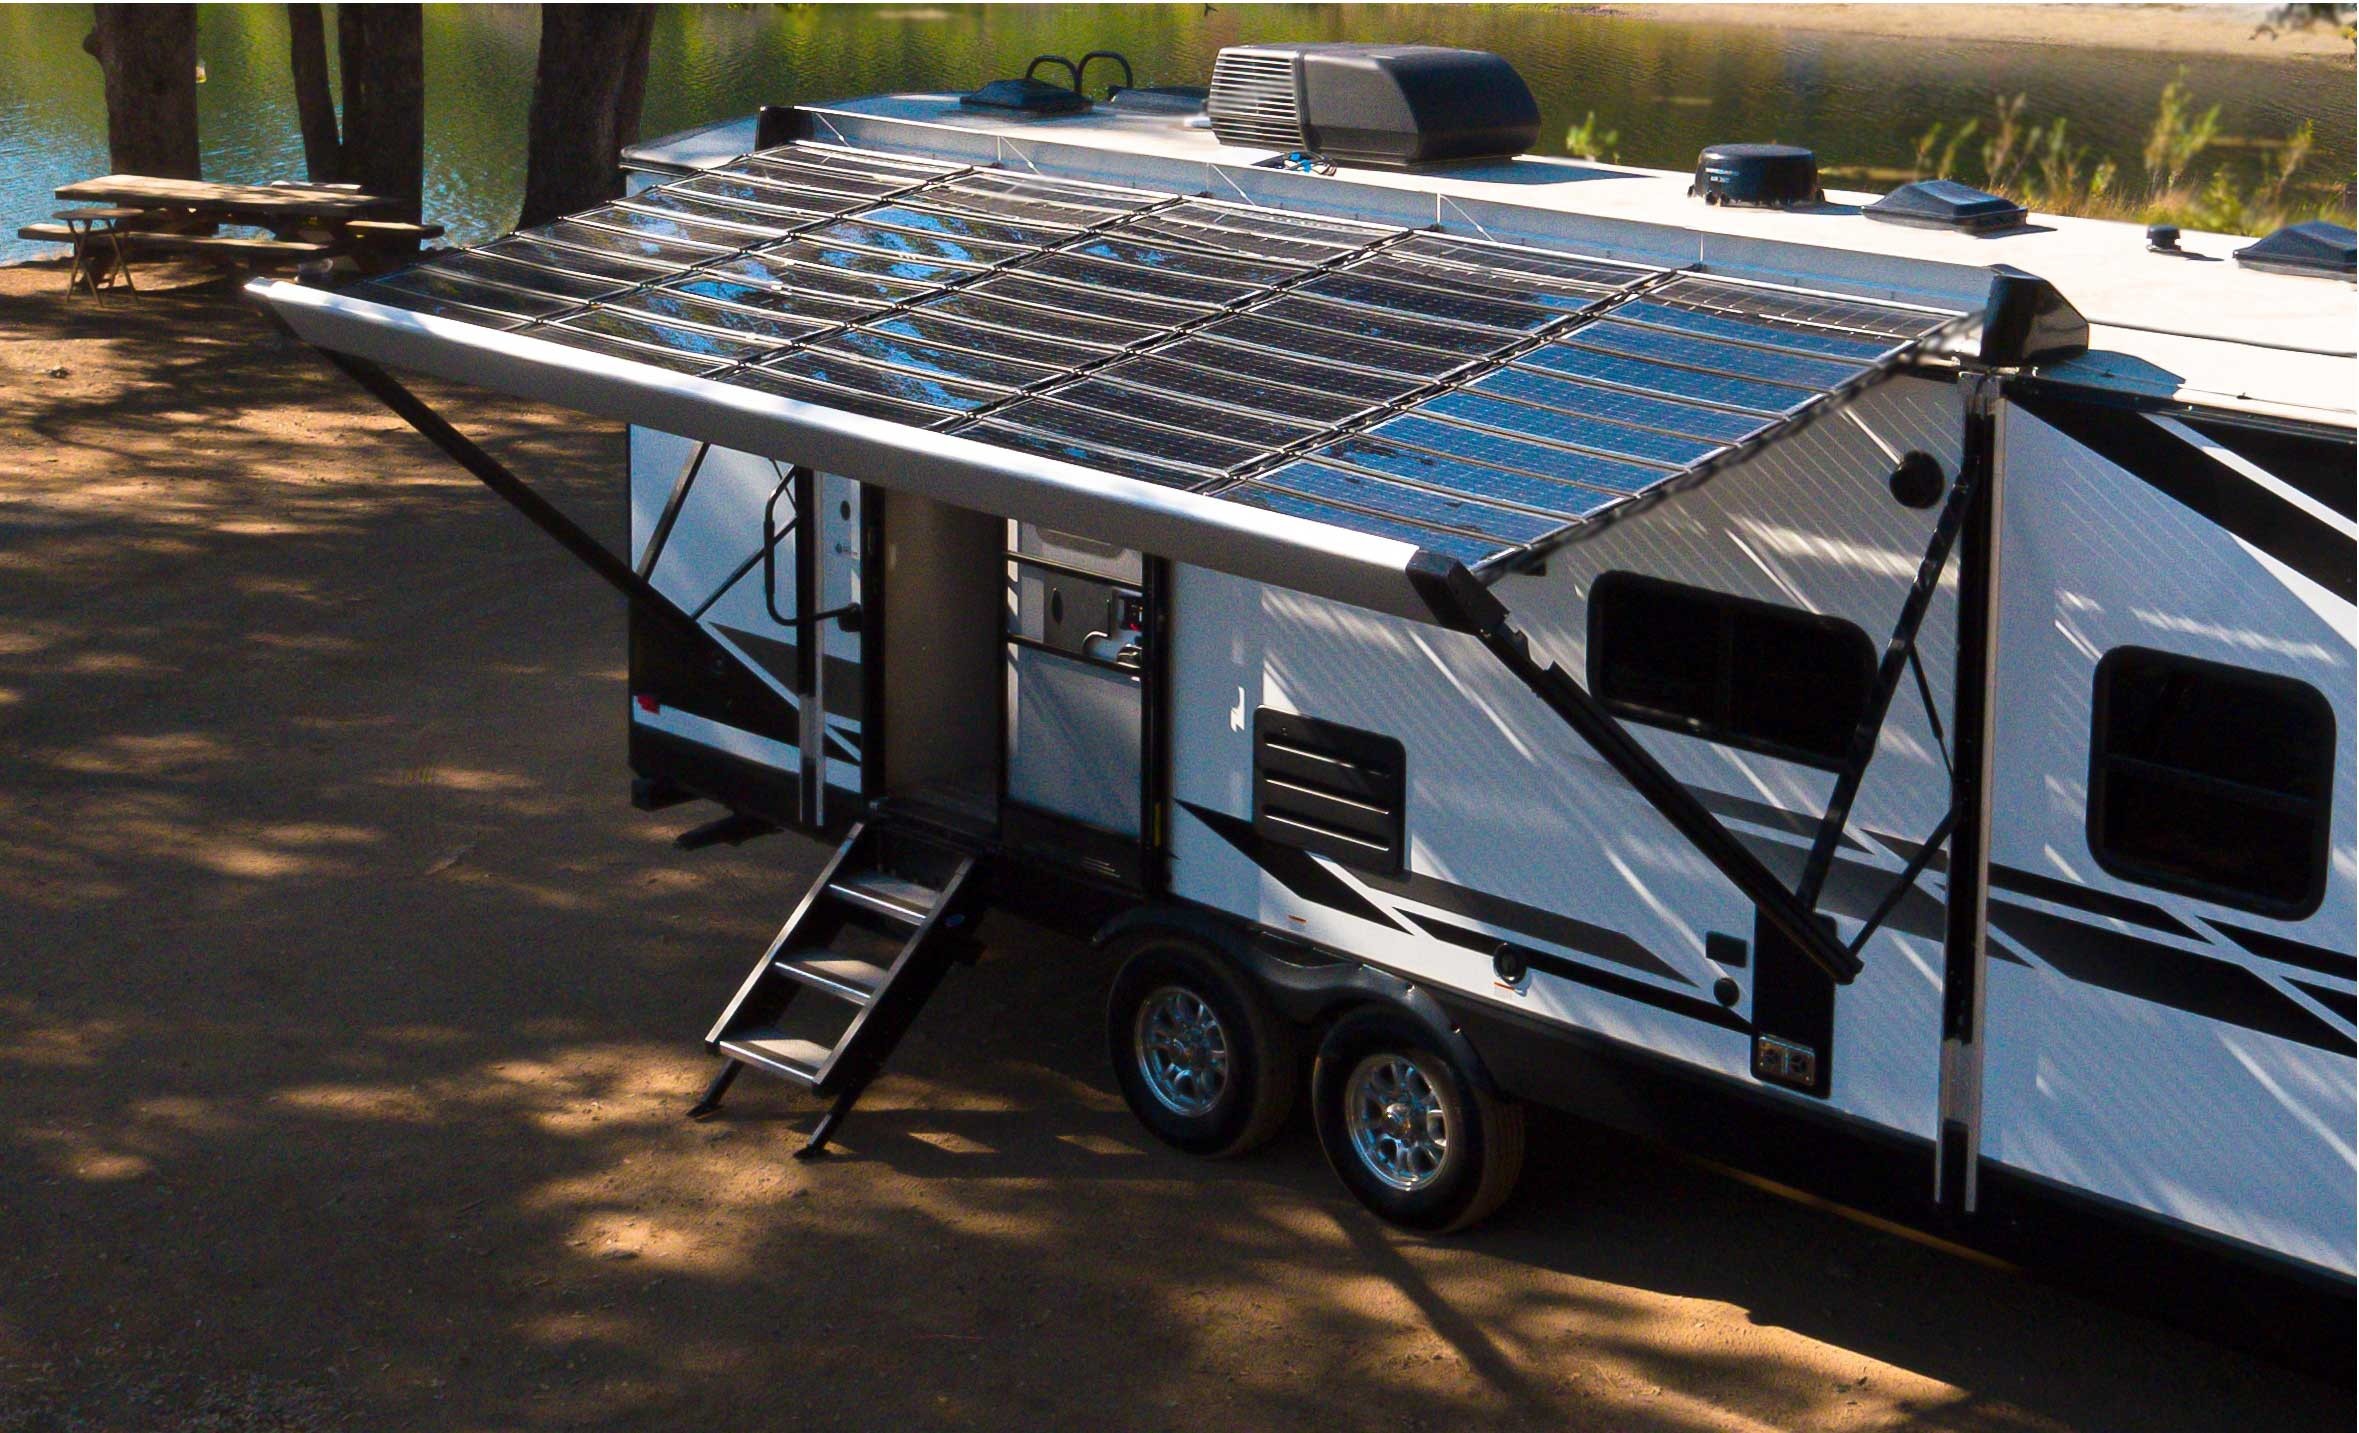 solar energy for travel trailer